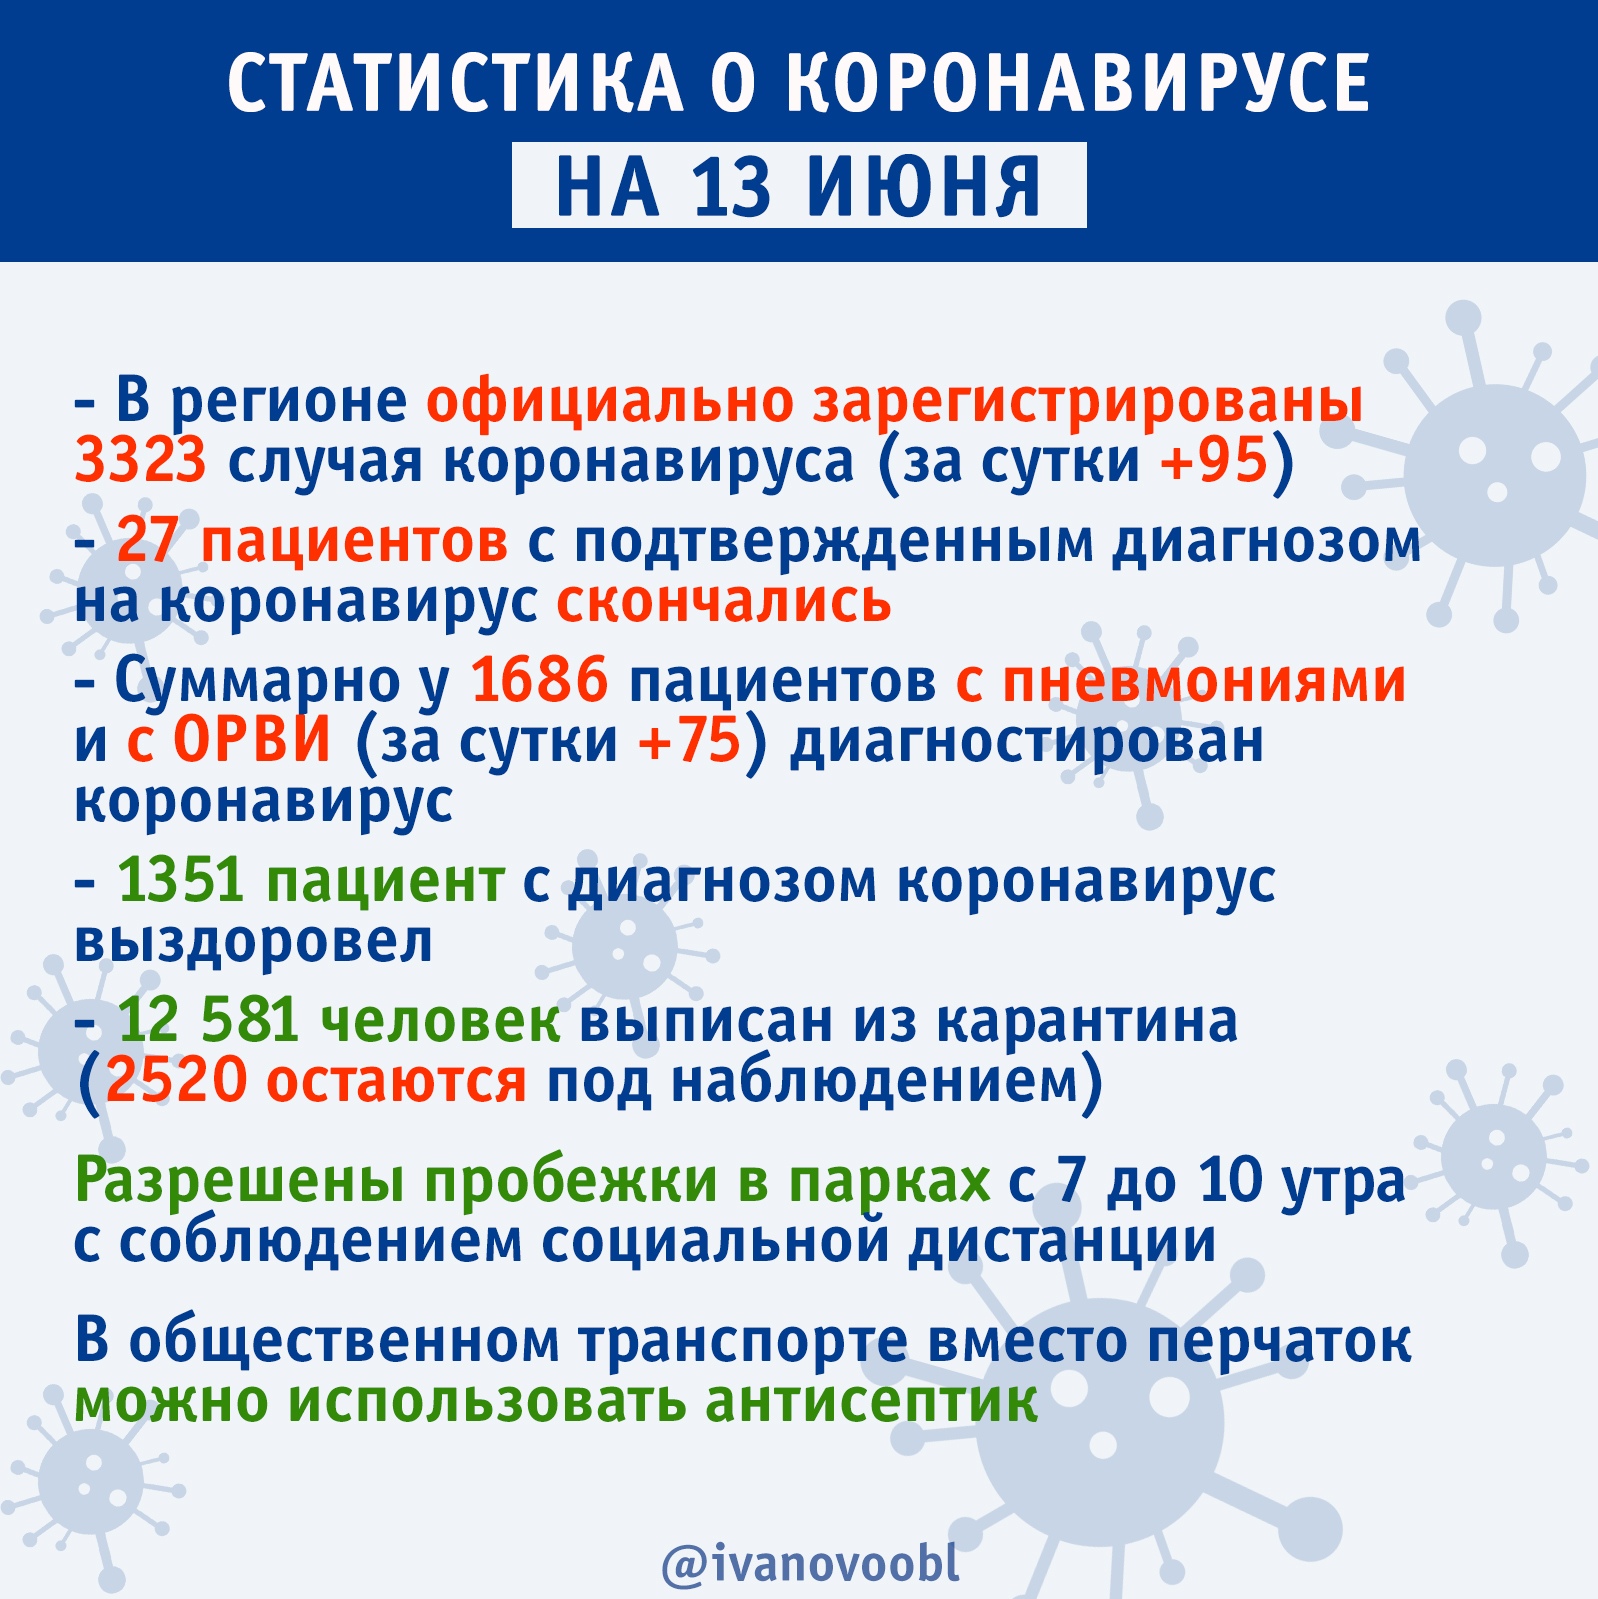 Статистика распространения коронавируса в Ивановской области